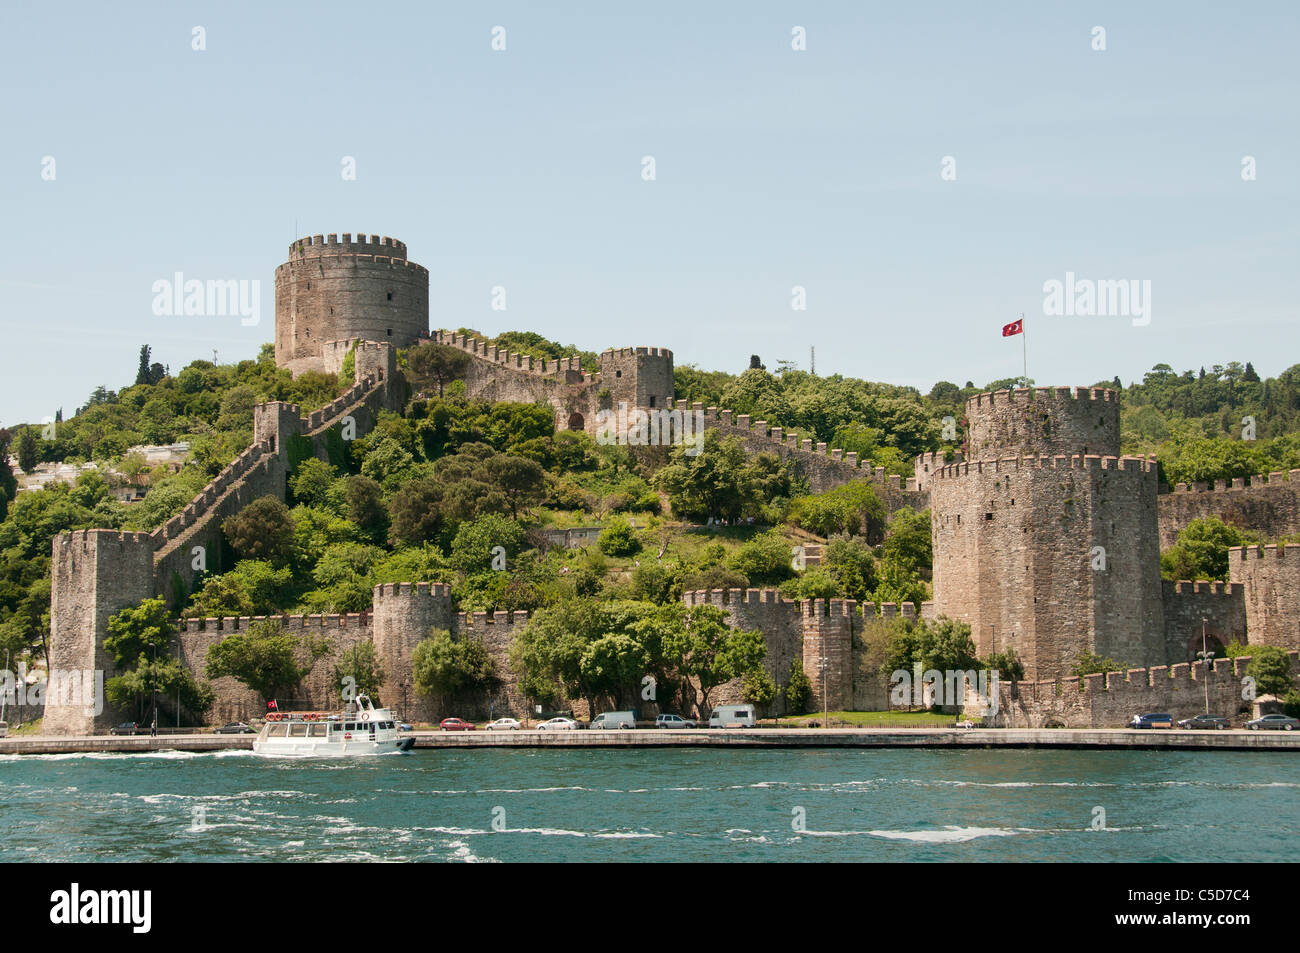 Rumelihisarı westrumelischen Rumeli Castle ist eine Burg Istanbul Türkei europäischen Seite des Bosporus Sultans osmanischen Sultan Mehmed II Stockfoto